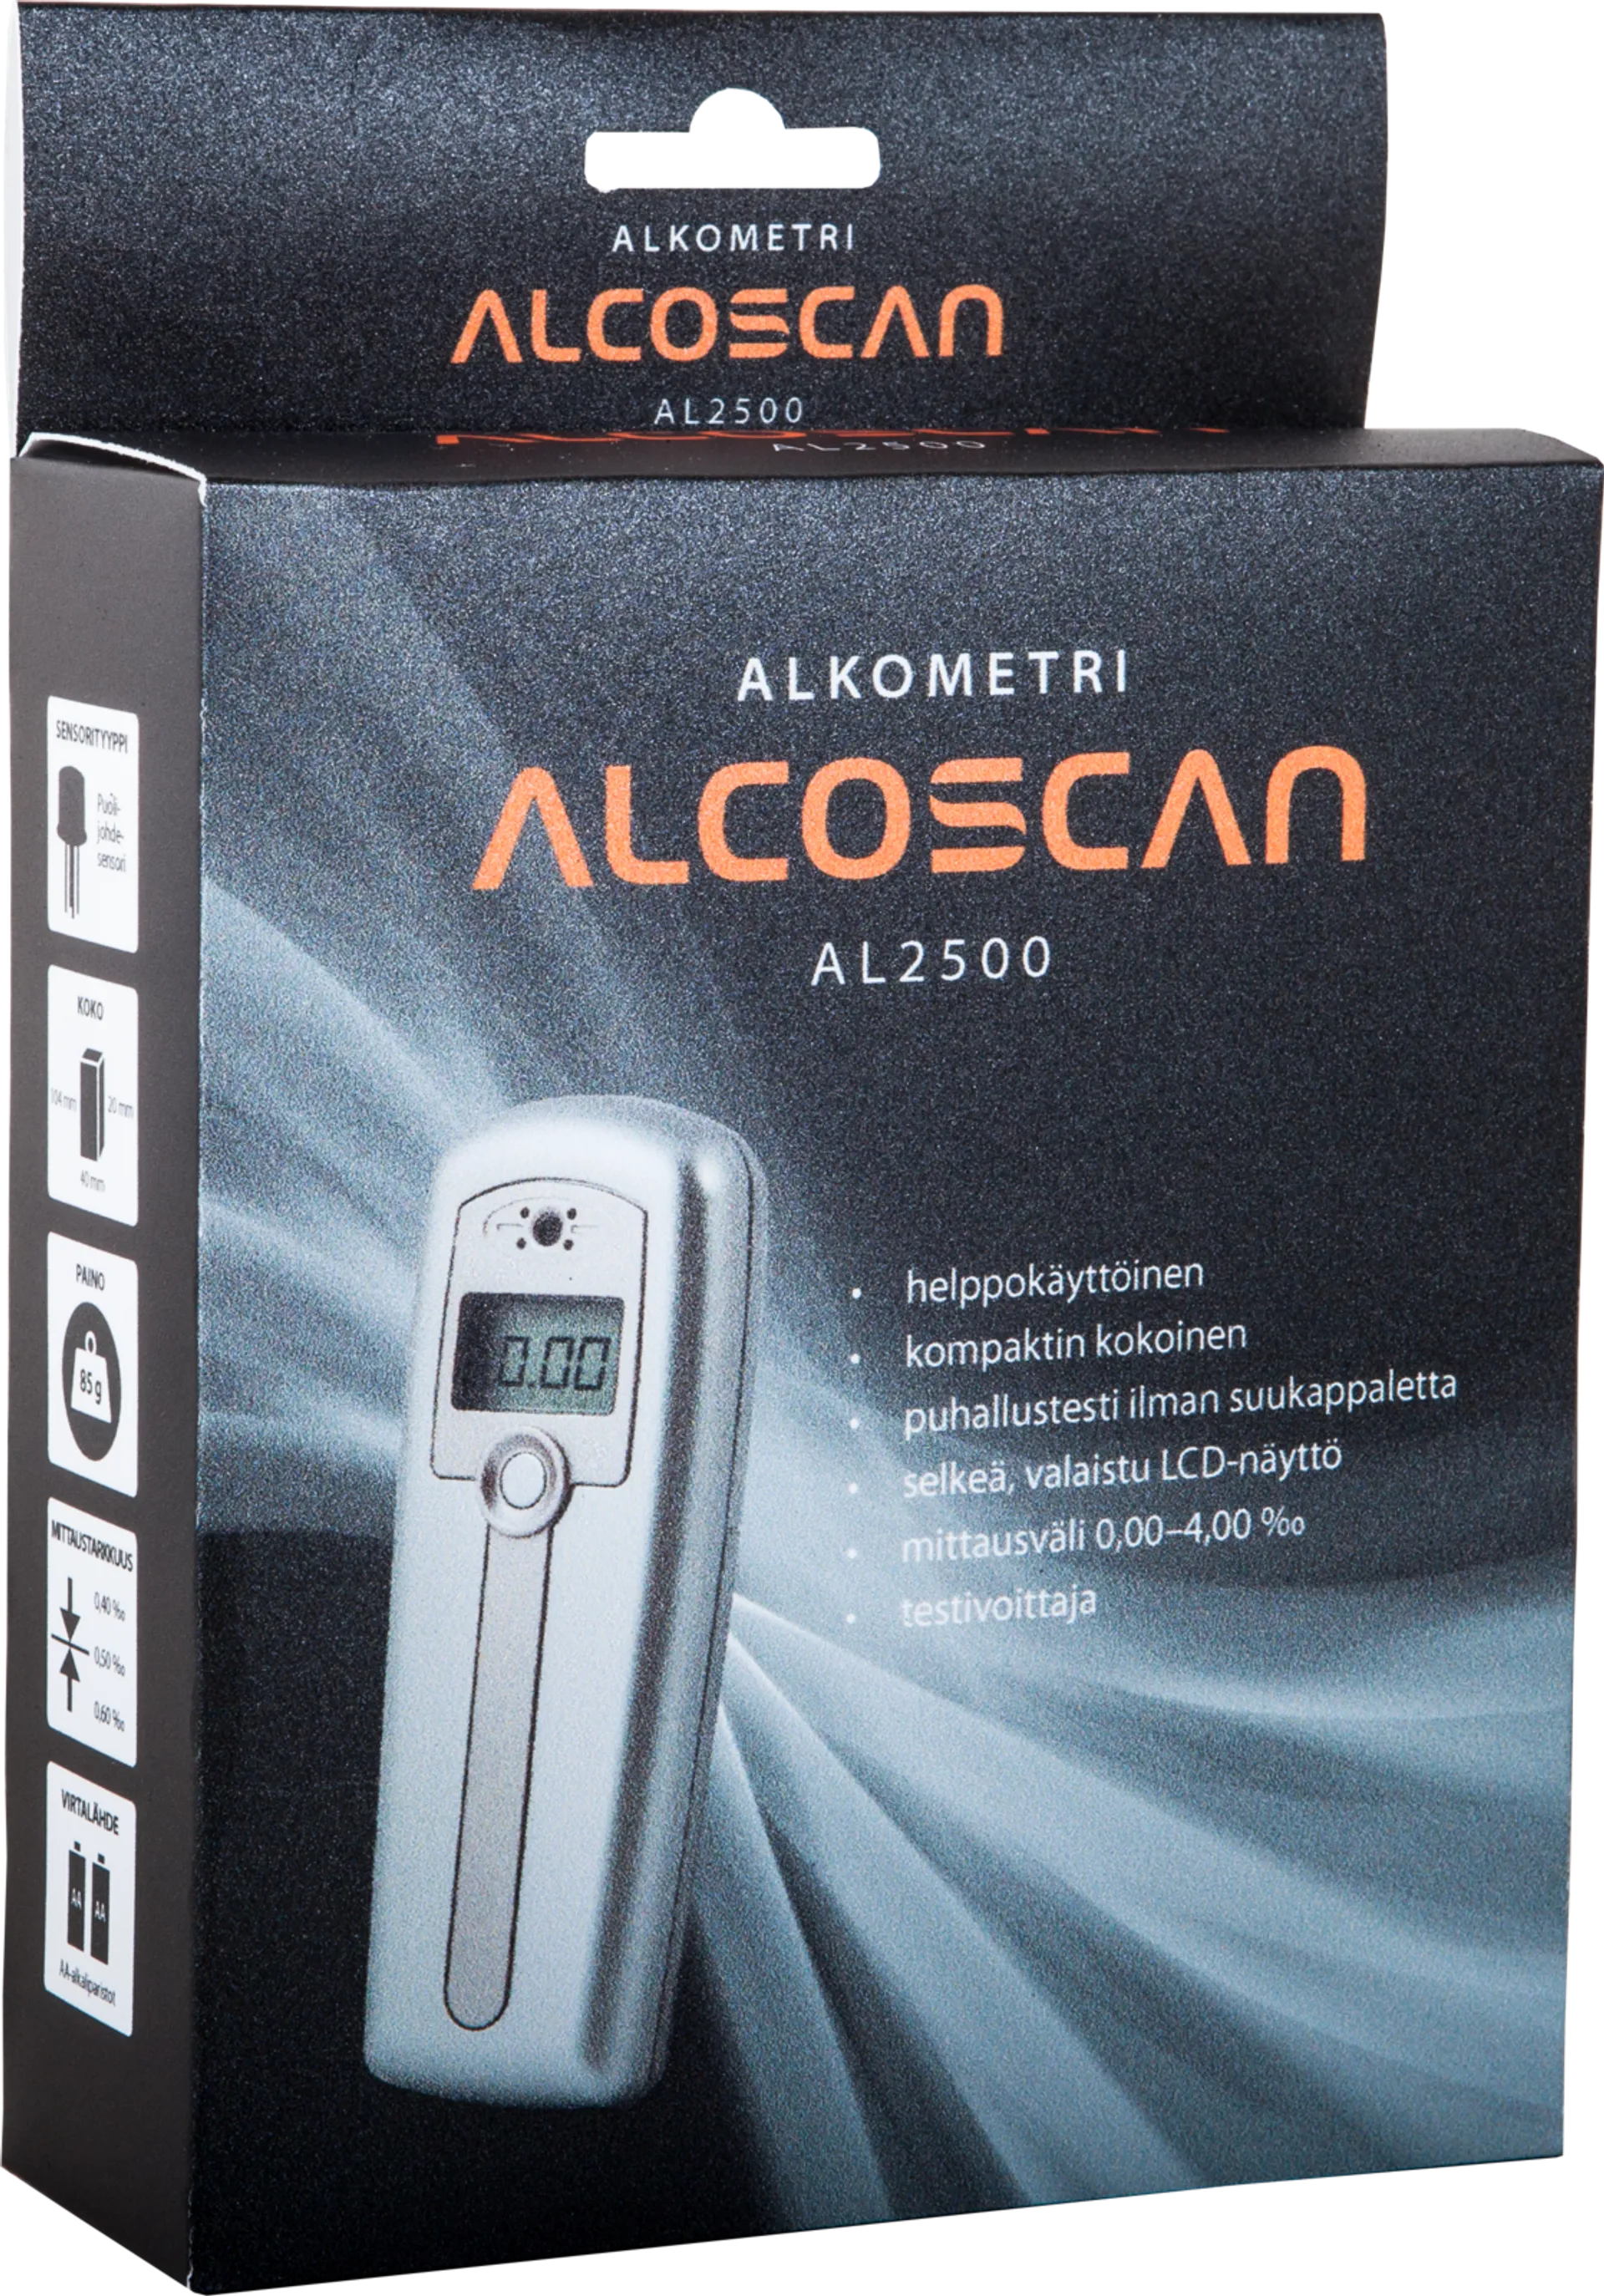 Alcoscan AL2500 alkometri